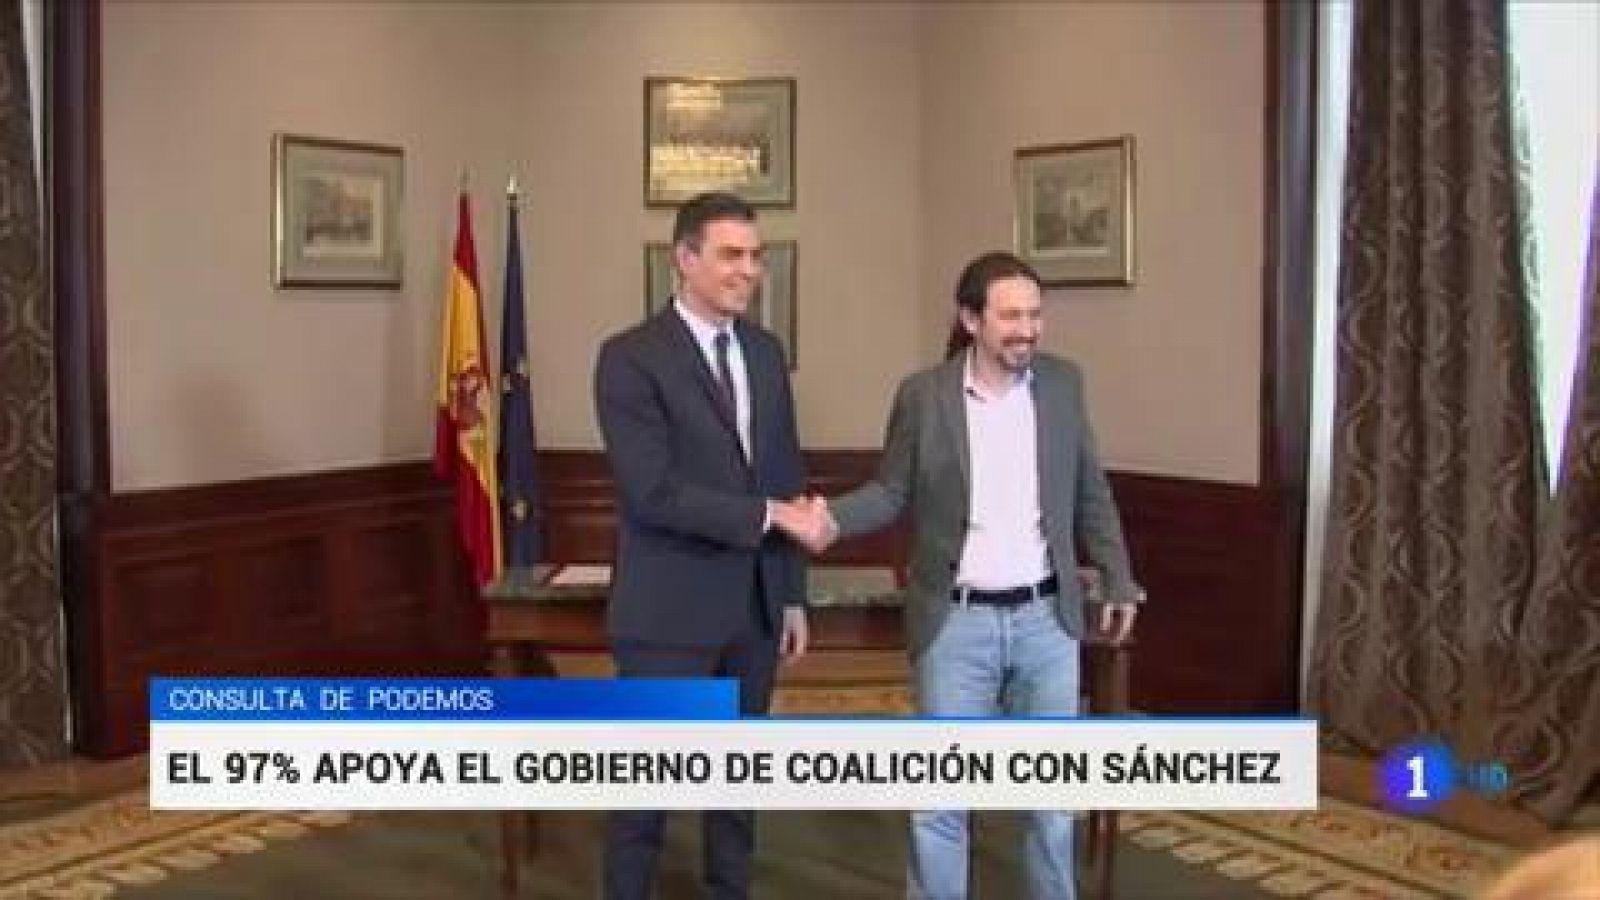 Las bases de Podemos avalan de forma masiva el preacuerdo con el PSOE para un gobierno de coalición